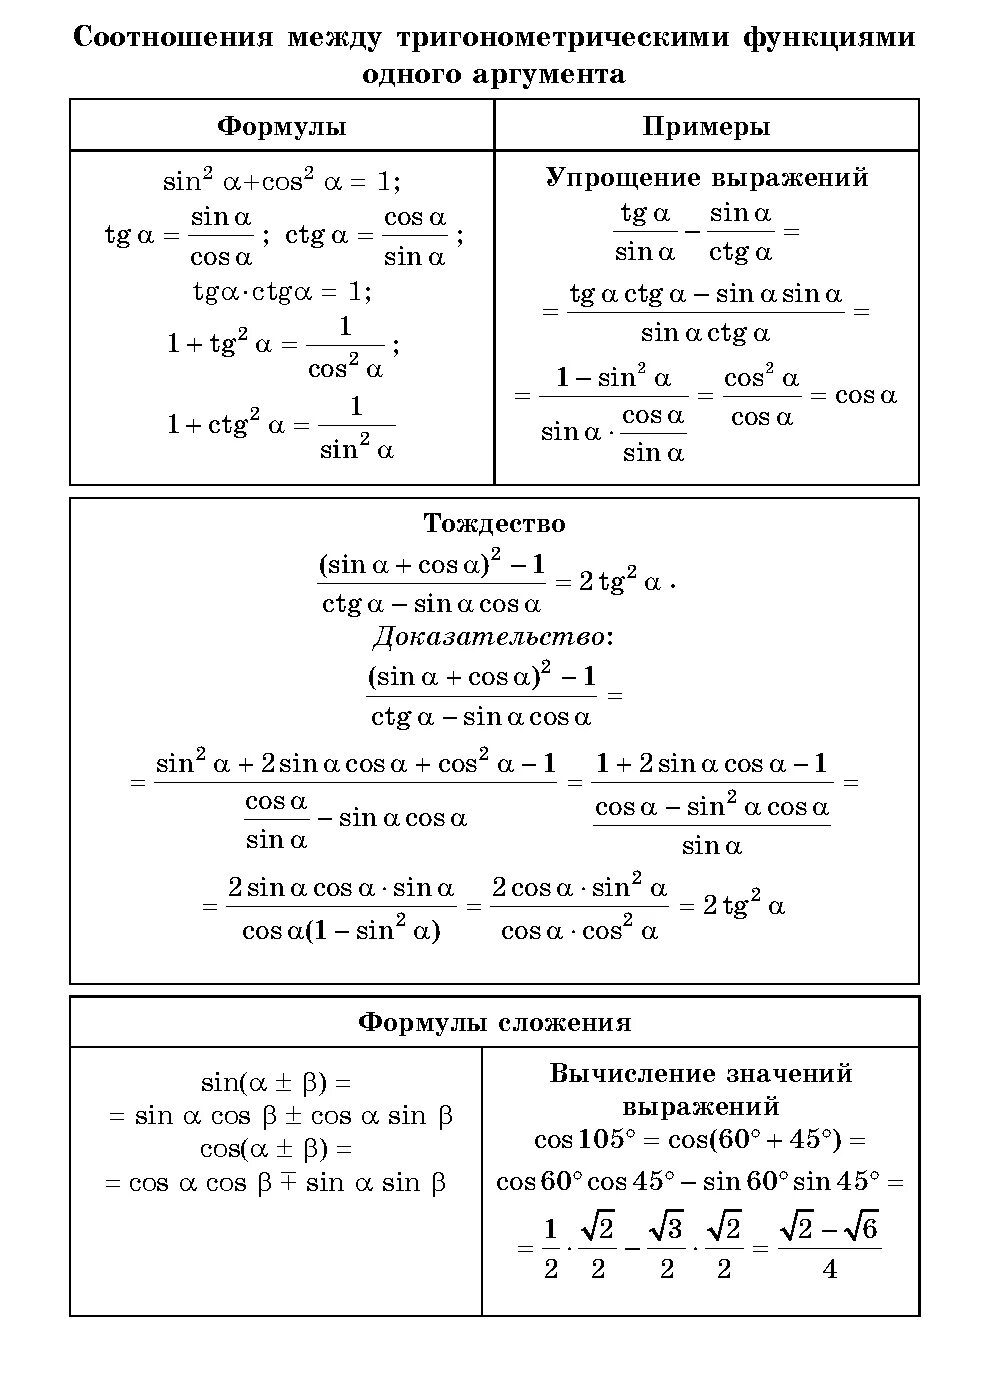 Соотношения между функциями одного аргумента. Формулы соотношения тригонометрических функций. Формулы соотношения между тригонометрическими функциями таблица. Основные тригонометрические формулы. Основные тригонометрические тождества 10 класс формулы.